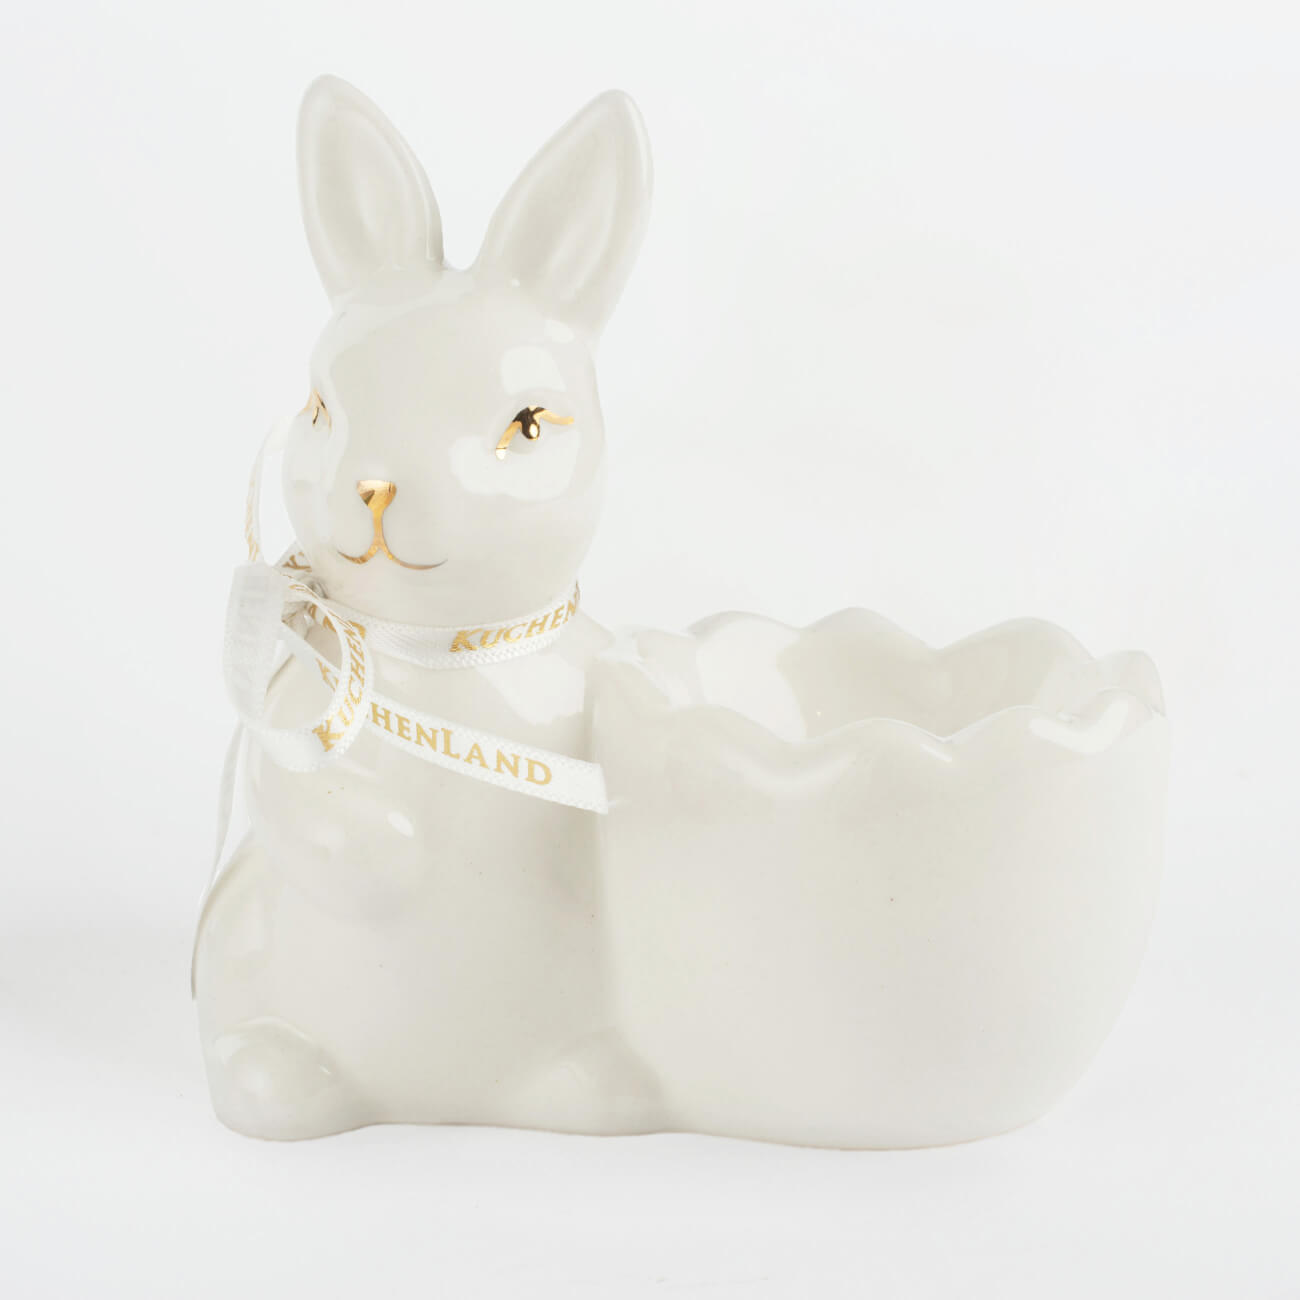 Подставка для яйца, 10 см, керамика, бело-золотистая, Кролик со скорлупкой, Easter gold нефритовые яйца стандарт 3 шт